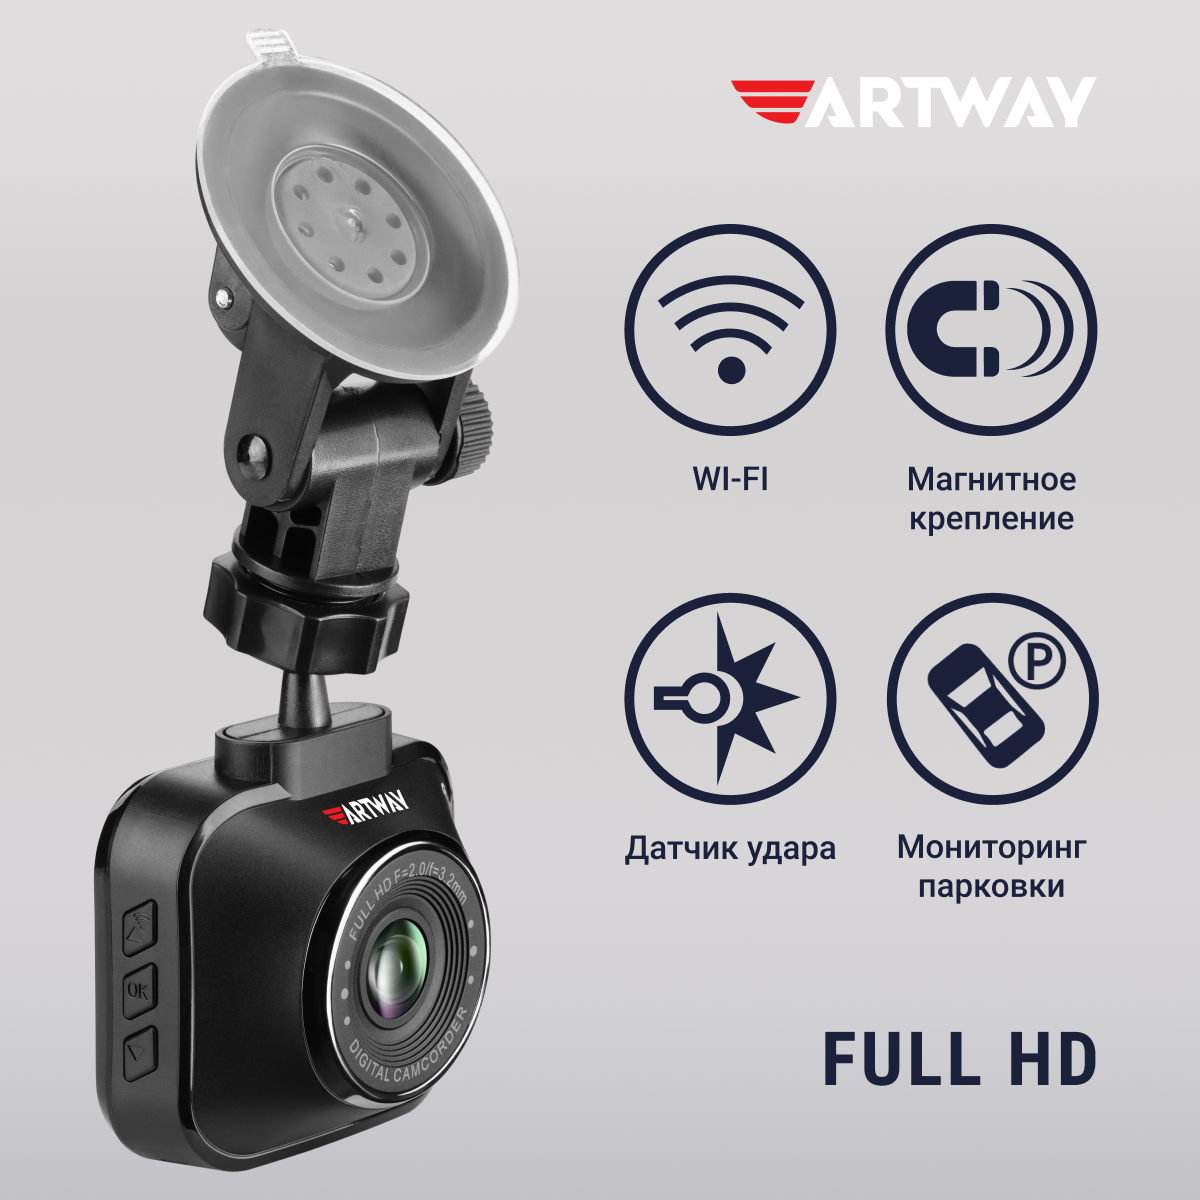 Видеорегистратор для автомобиля Artway AV-407 Full HD, WiFi